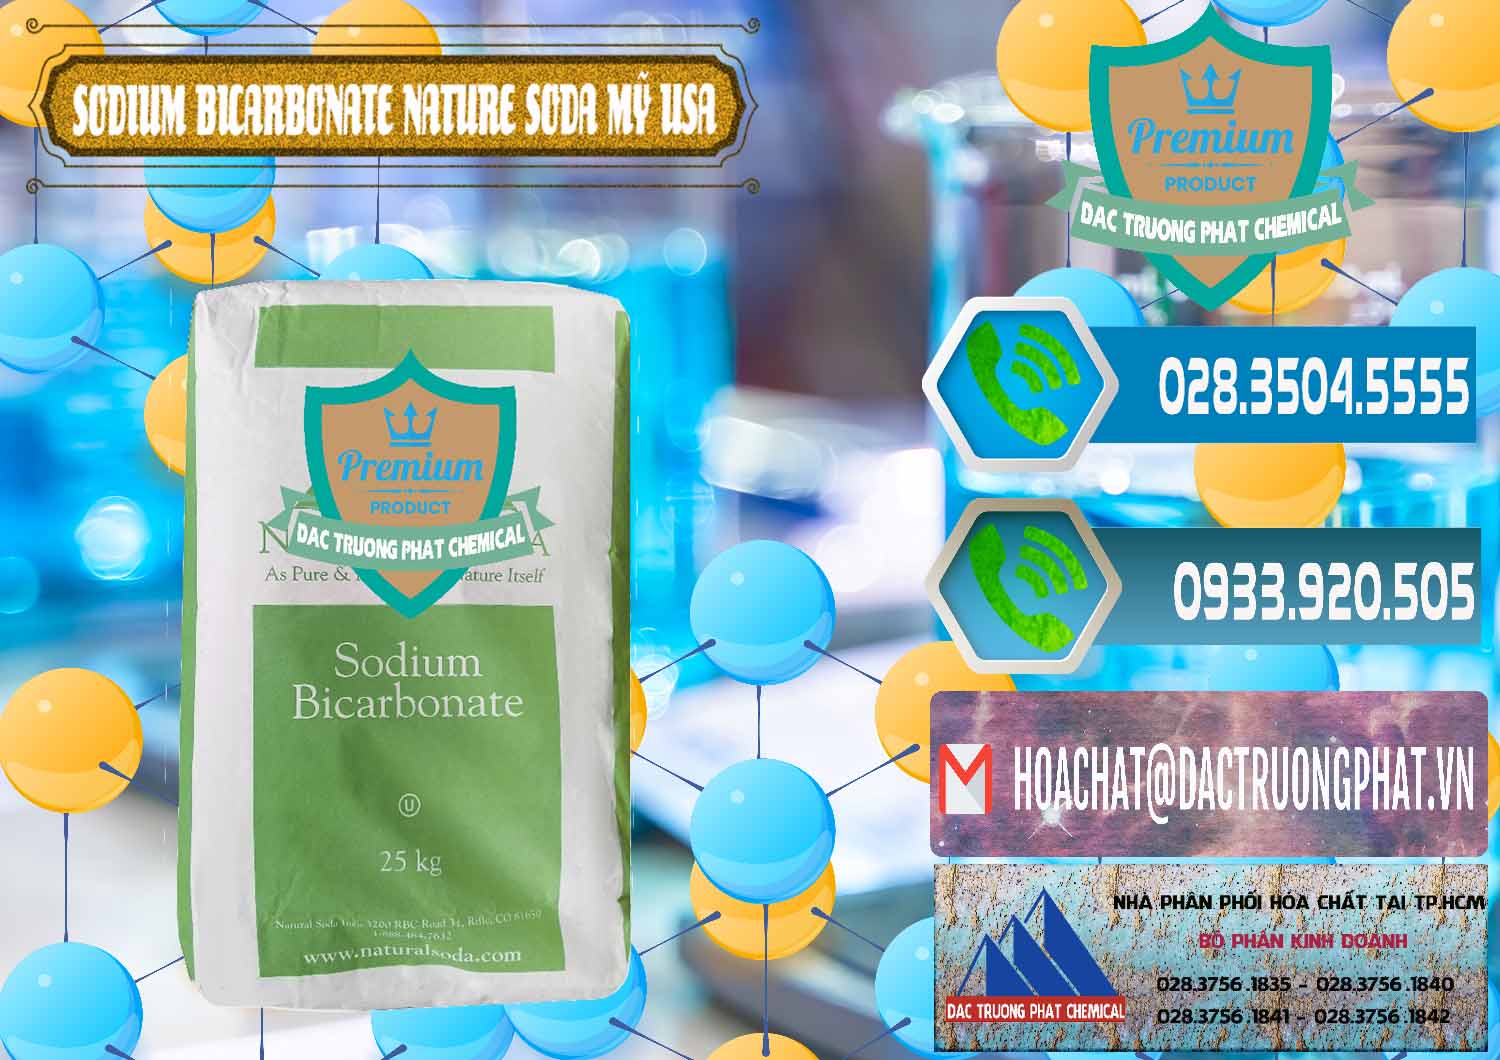 Cty chuyên nhập khẩu và bán Sodium Bicarbonate – Bicar NaHCO3 Food Grade Nature Soda Mỹ USA - 0256 - Cty chuyên bán - phân phối hóa chất tại TP.HCM - congtyhoachat.net